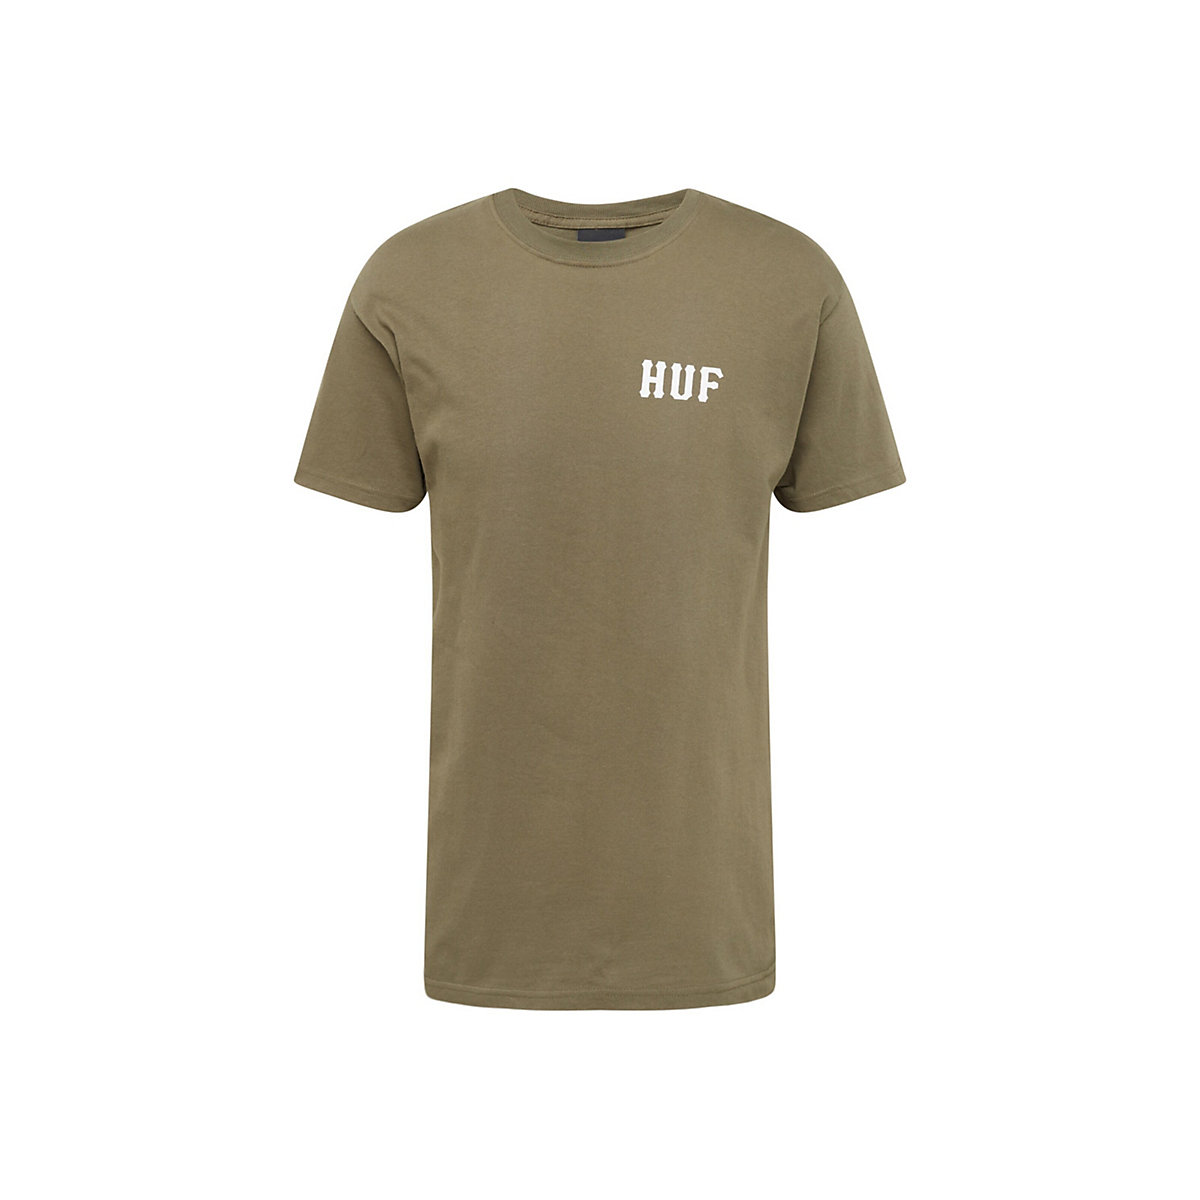 HUF Shirt khaki